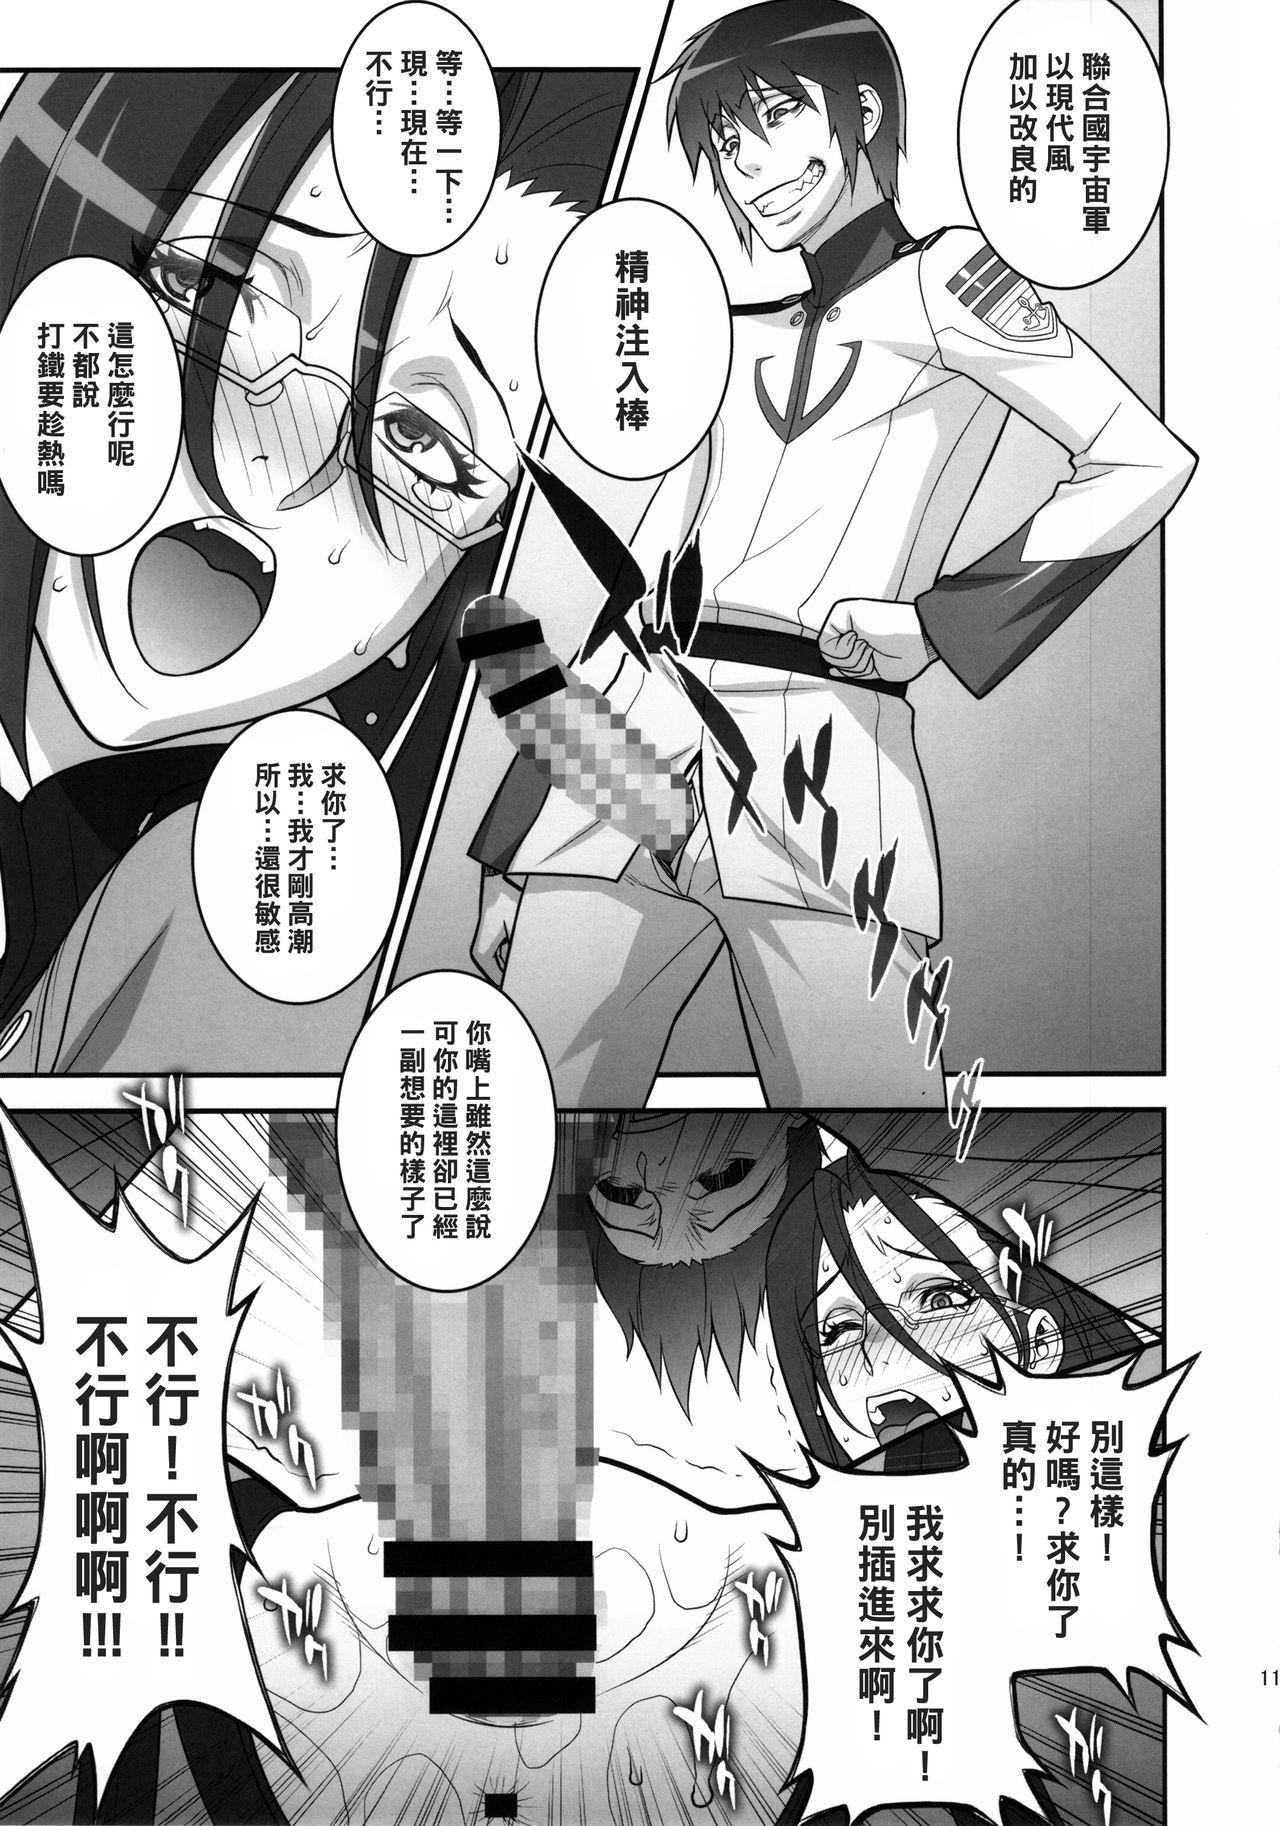 Masturbates Ero Niku Onna Shikan Dono - Space battleship yamato 2199 Str8 - Page 10